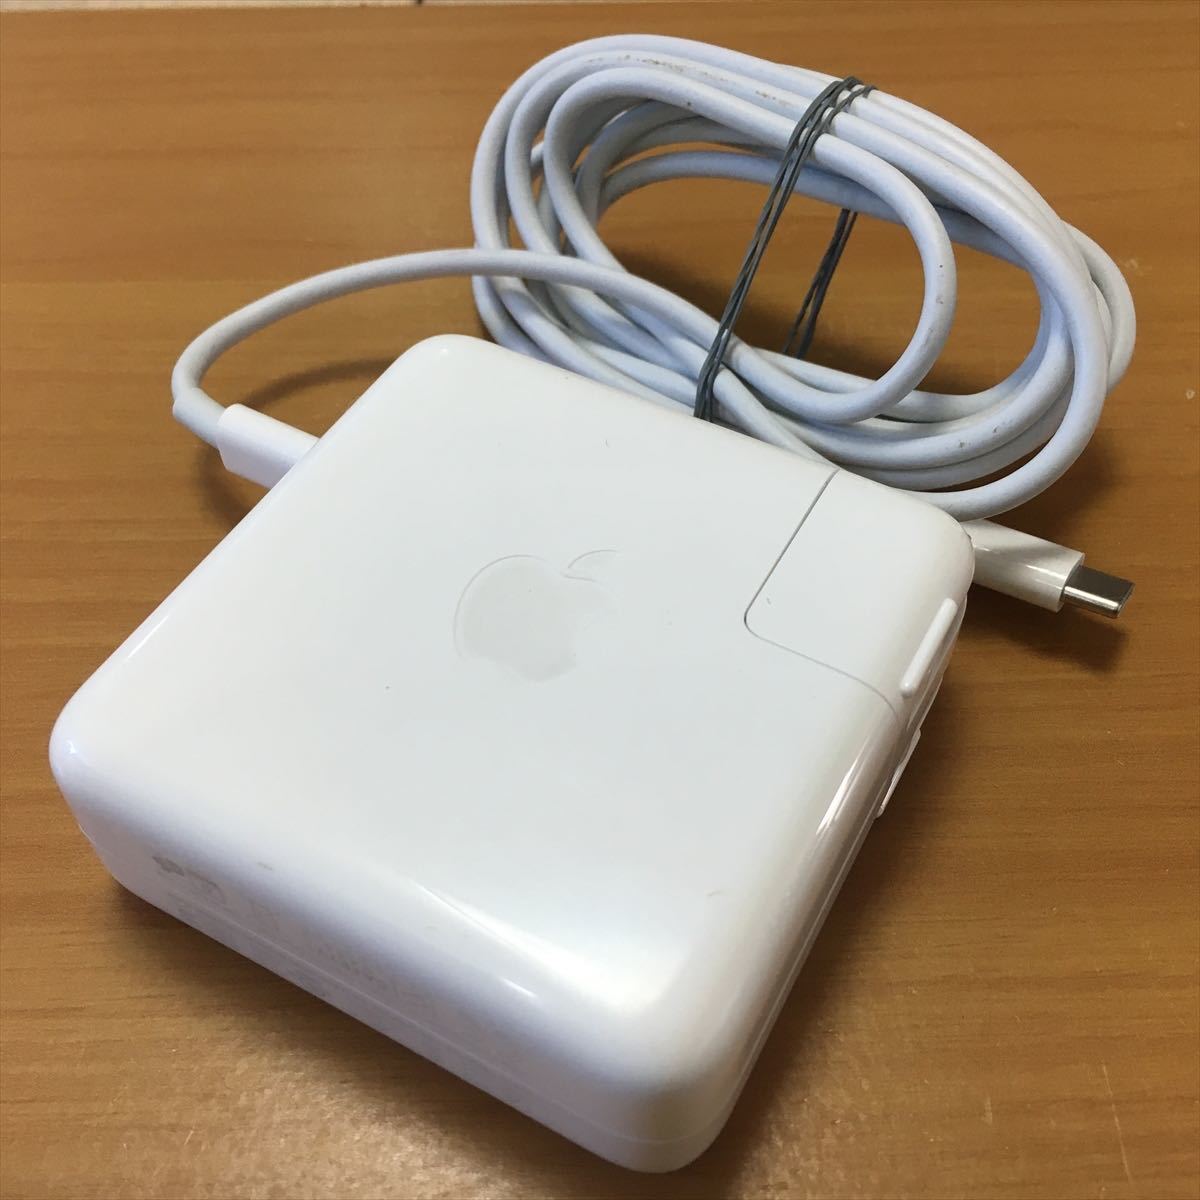 2) 純正品 Apple MacBook Pro用 61W USB-C POWER ADAPTER ACアダプタ A1718_画像1